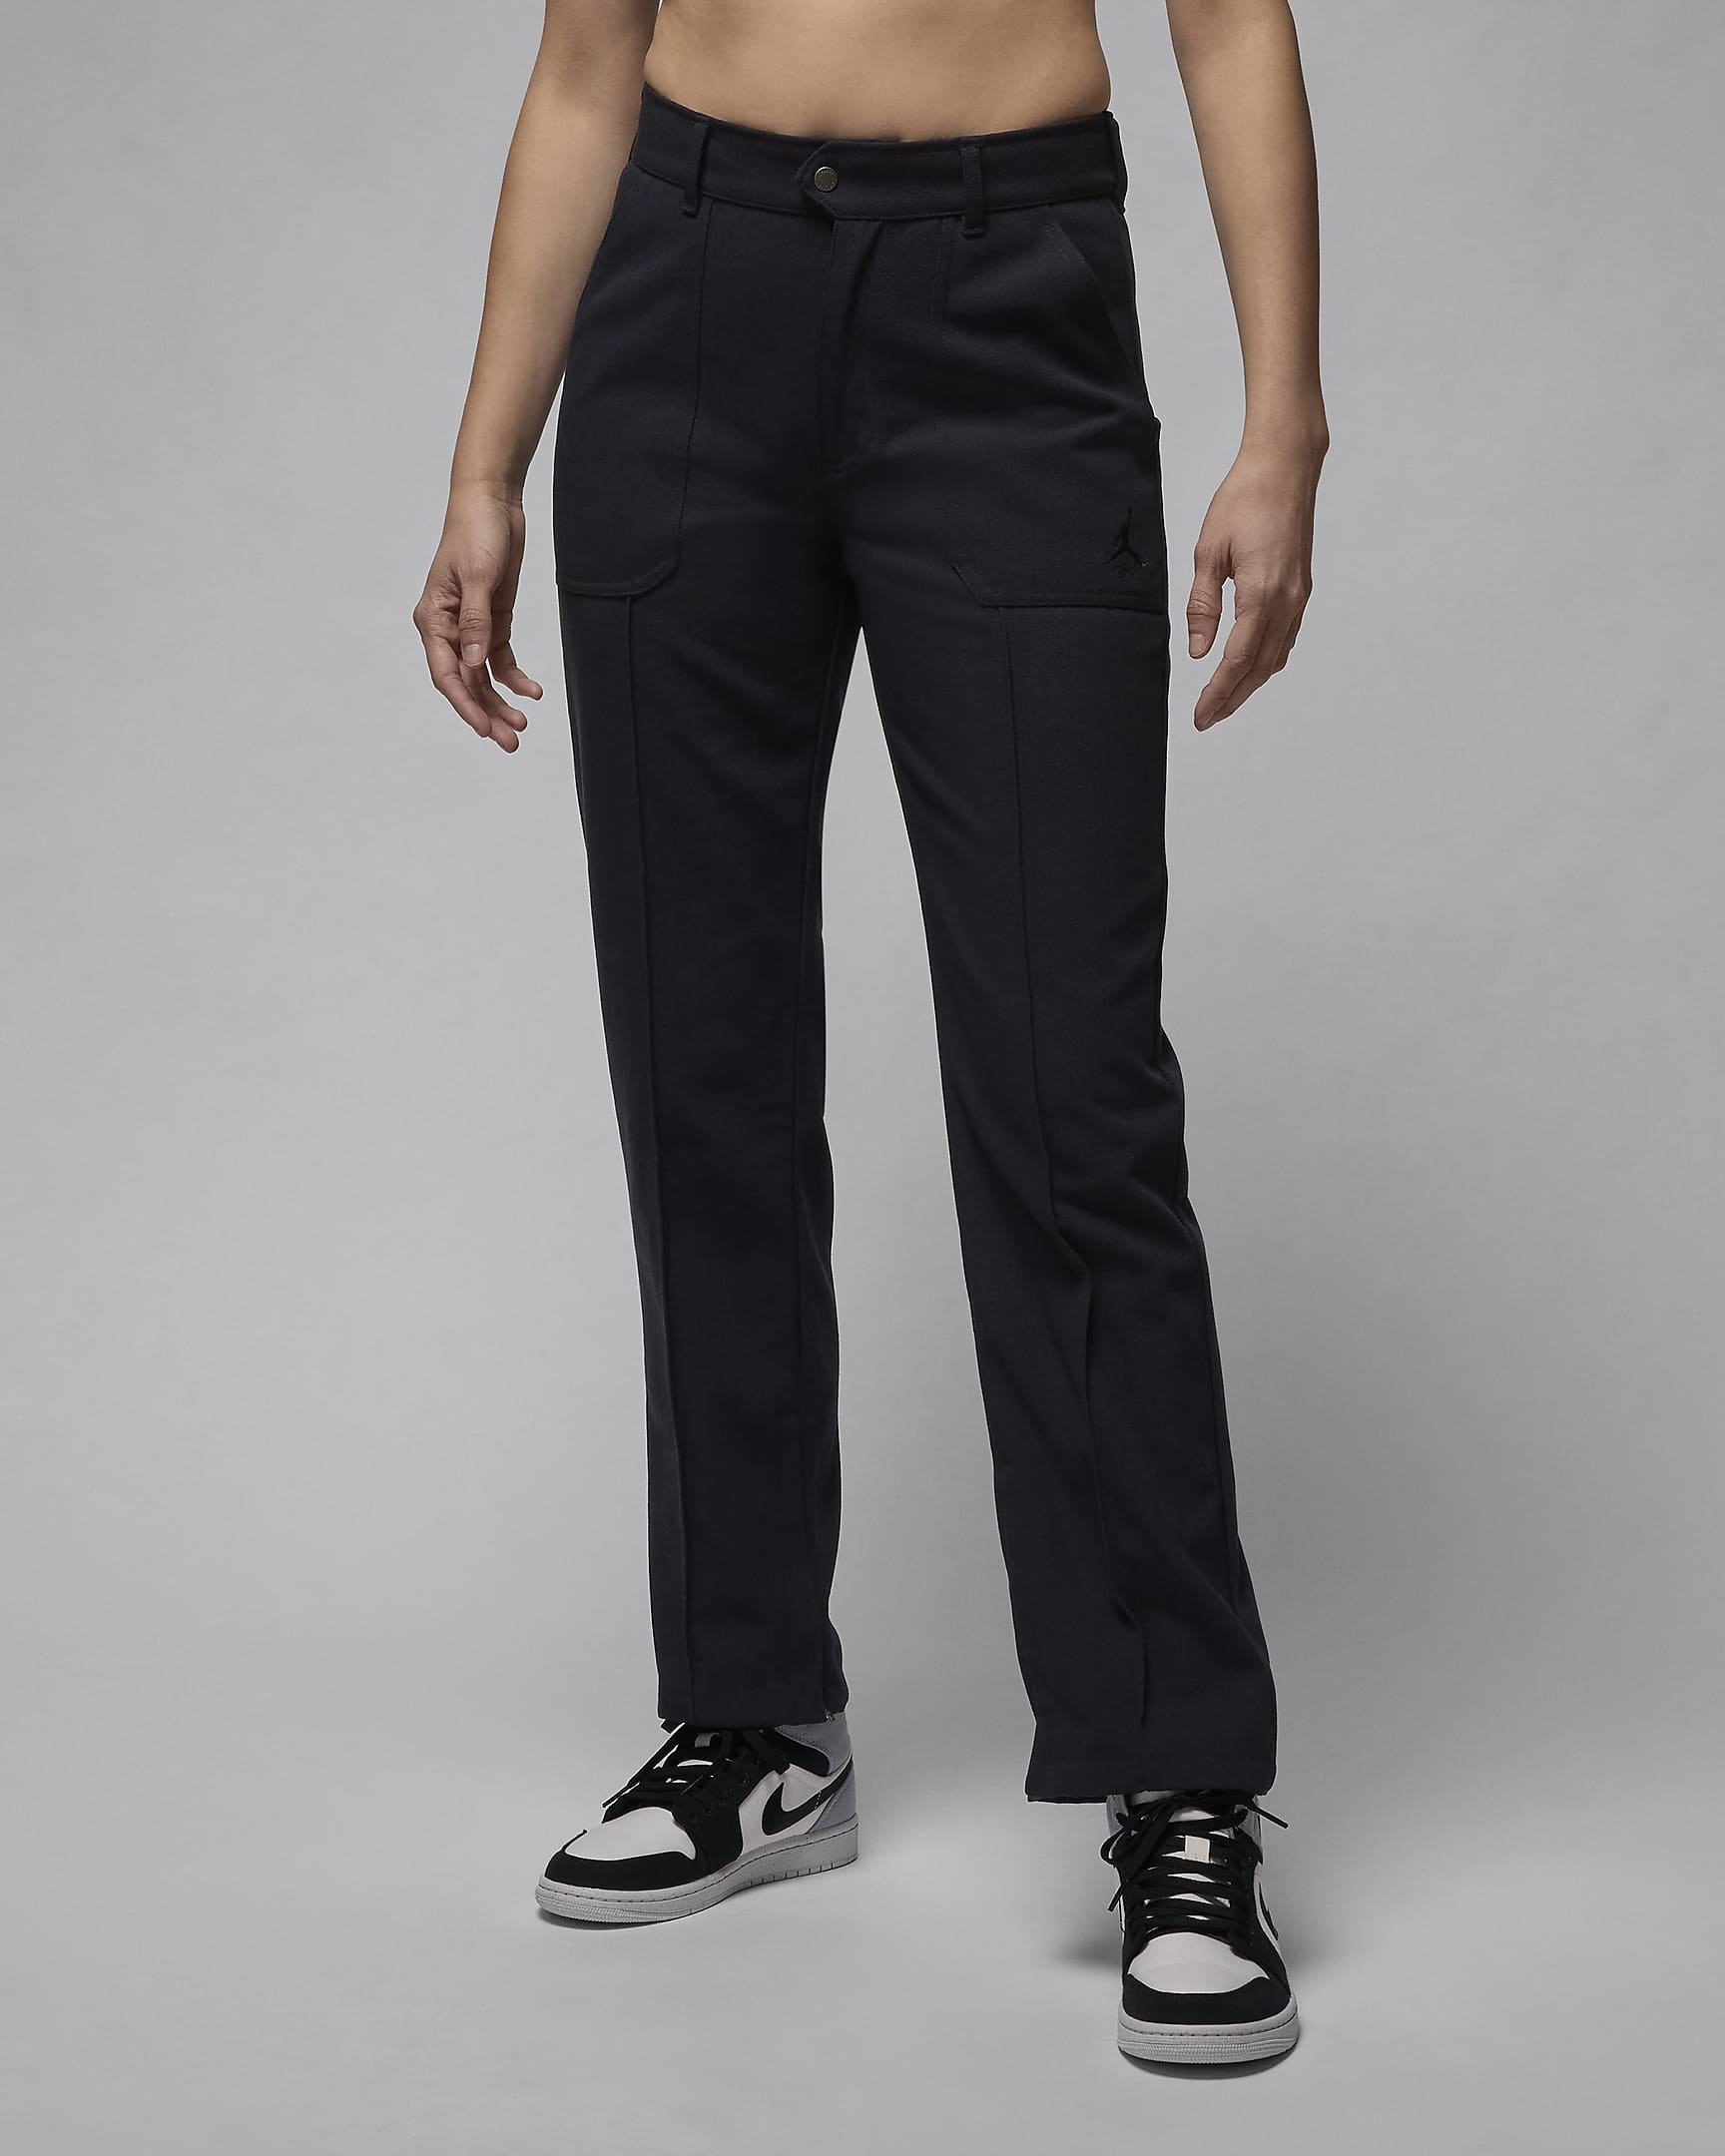 Jordan Women's Woven Pants - Black